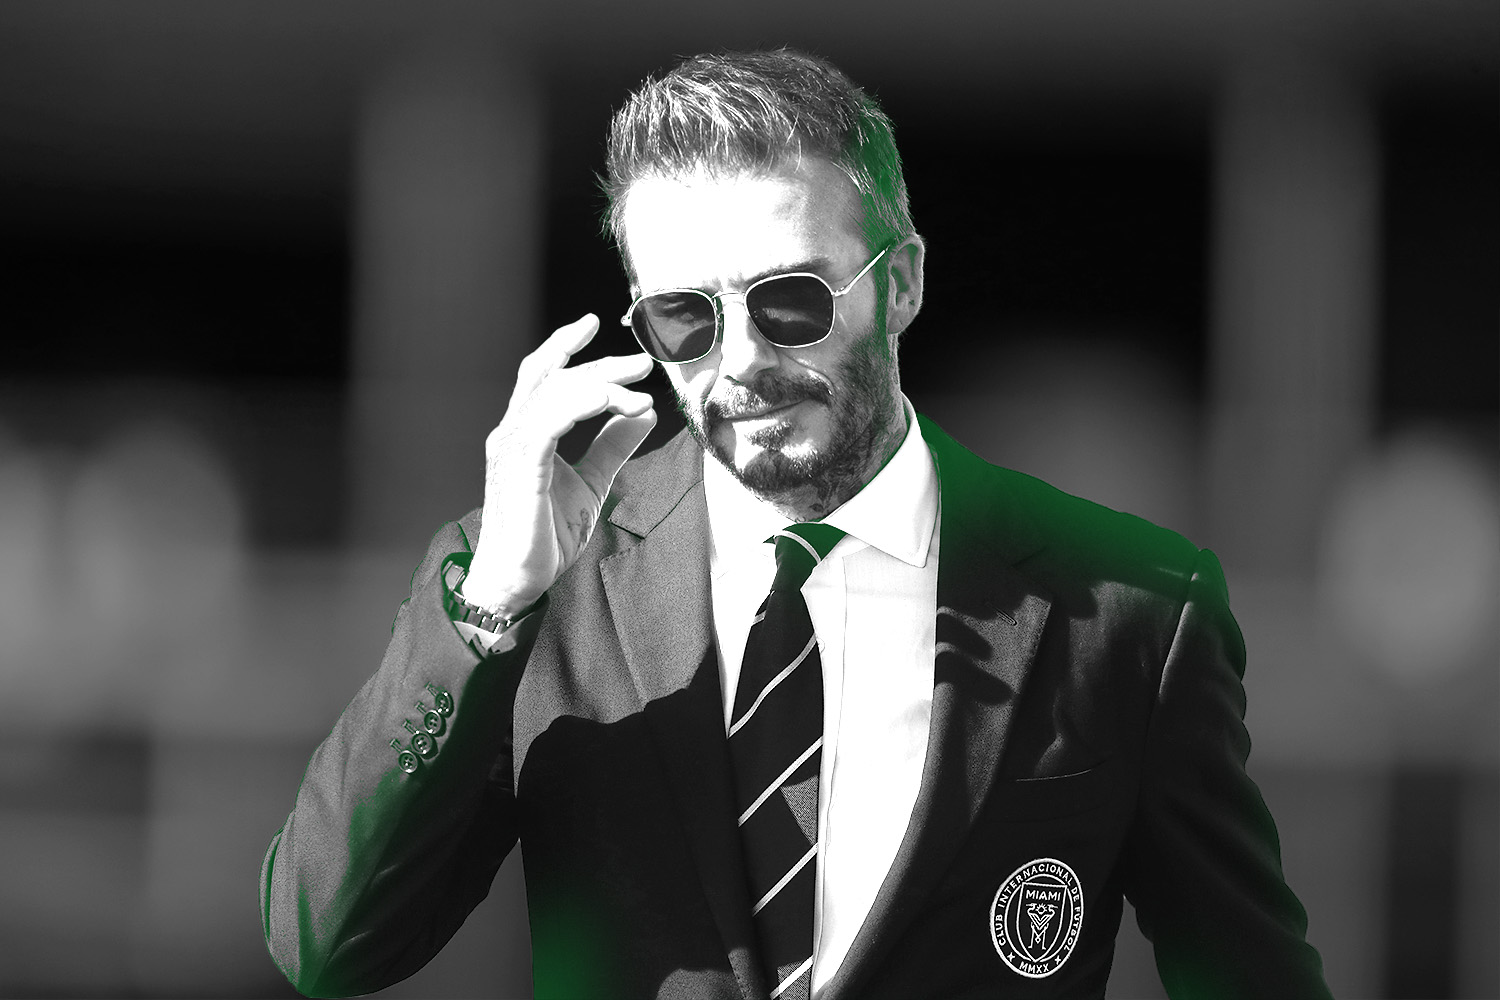 david-beckham-2022-eyewear-4  David beckham, Beckham, Beckham